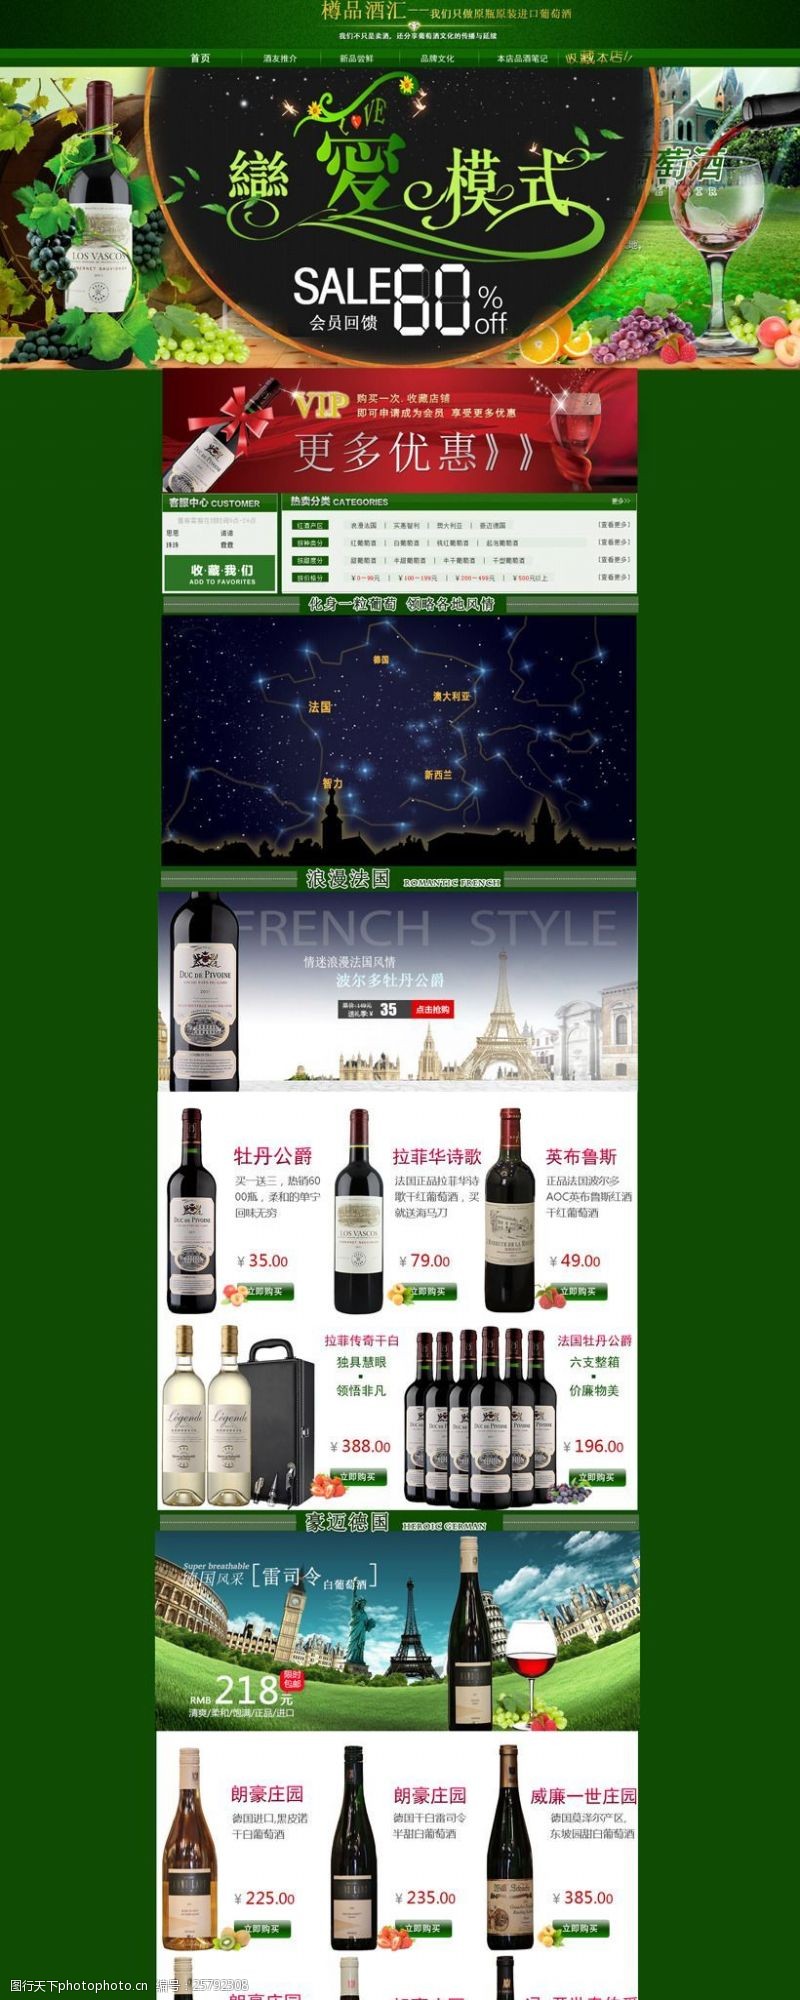 葡萄酒介绍淘宝红酒促销页面设计PSD素材